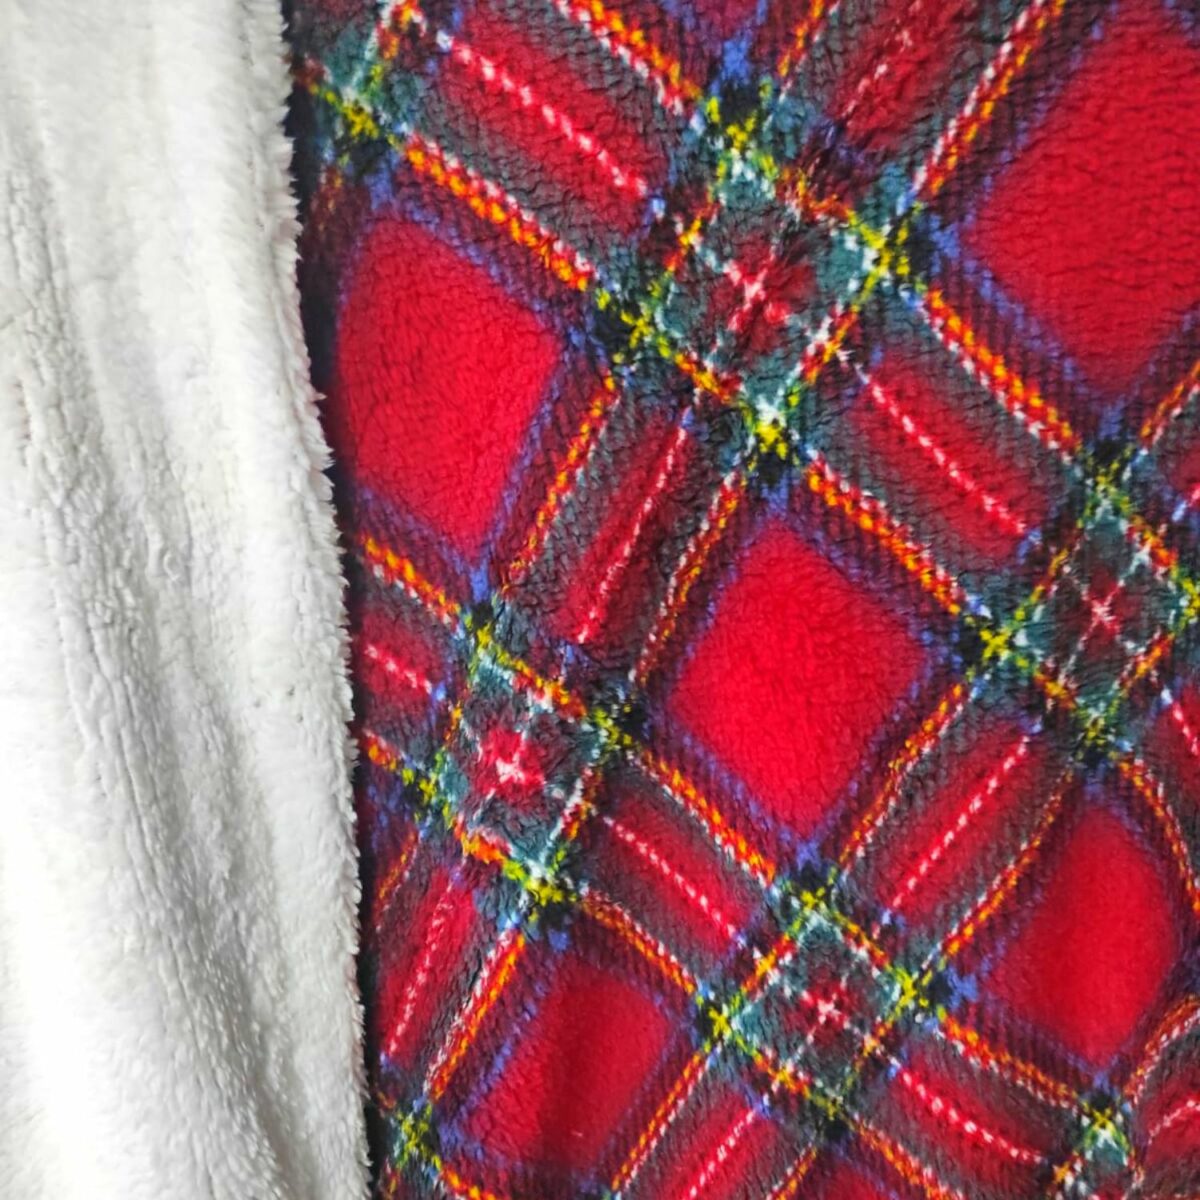 coperta-amburgo-rosso-scozzese-sherpa-calda-morbida-invernale-dettaglio-fantasia